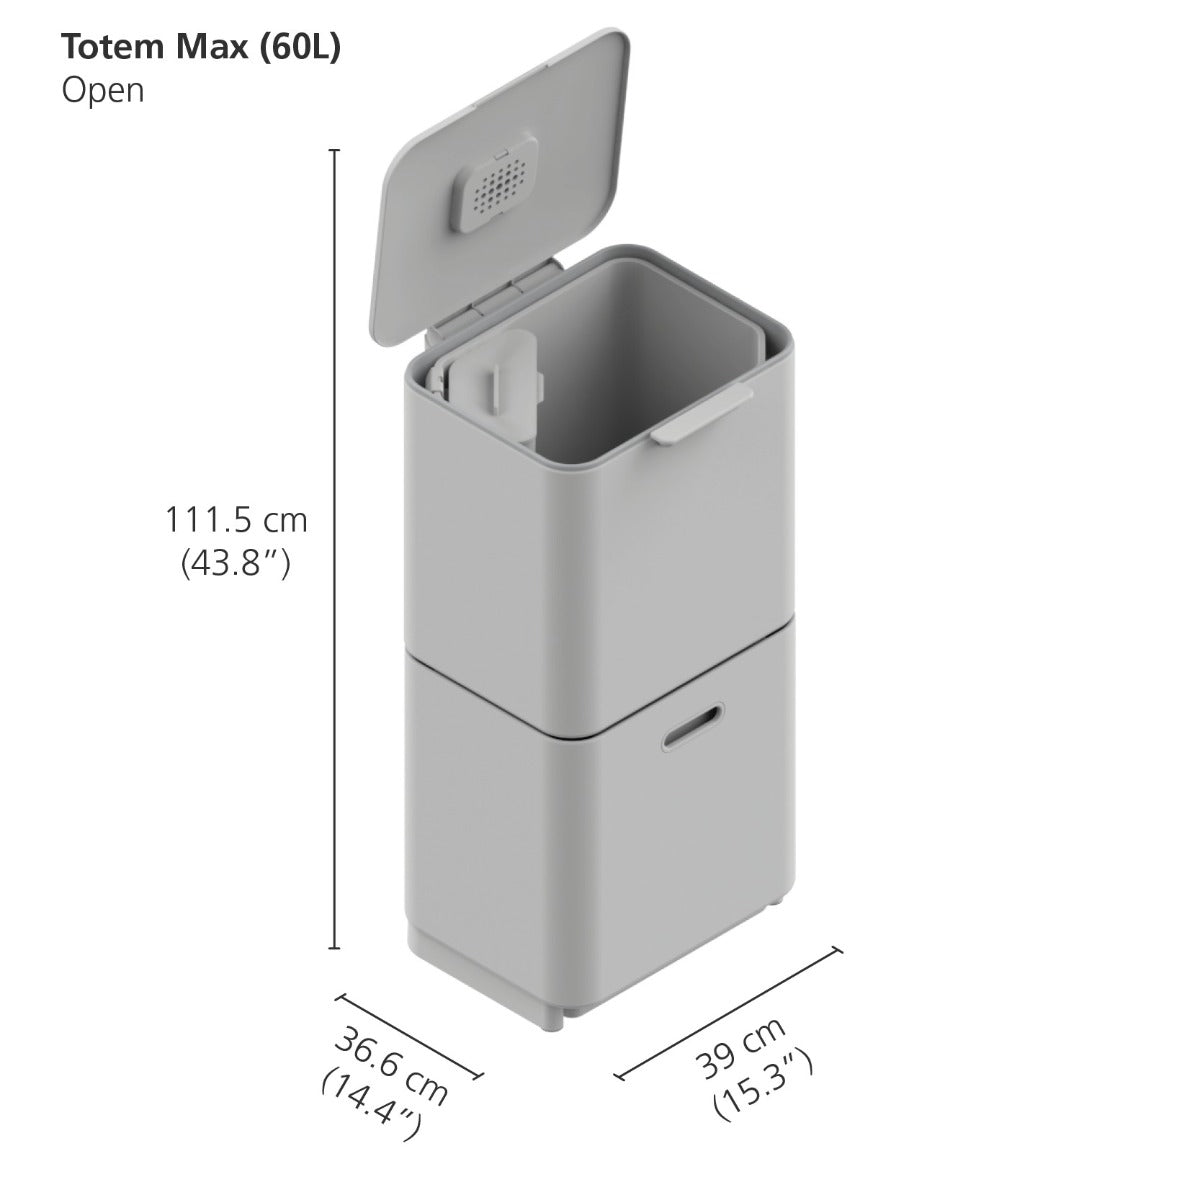 Joseph Joseph 3-Compartment Totem Max 60 Litre Kitchen Recycling Bin in carbon black 30106 dimensions when open